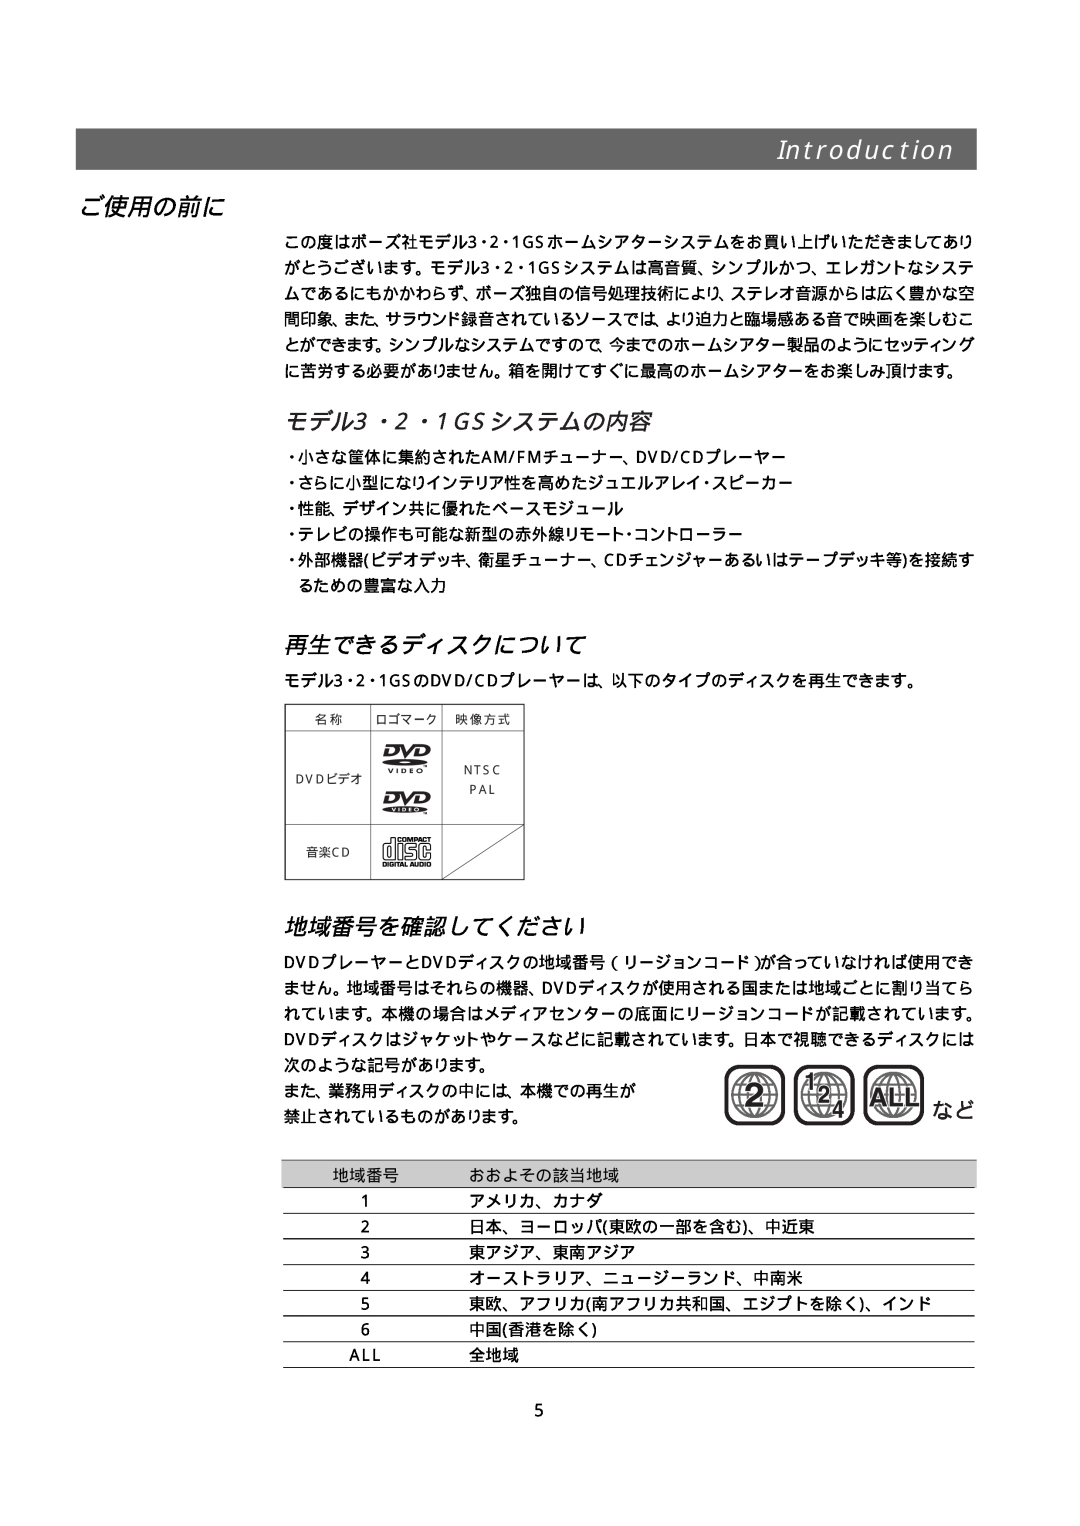 Bose 321GS owner manual Introduction, ご使用の前に, モデル3・2・1GSシステムの内容, 再生できるディスクについて, 地域番号を確認してください, おおよその該当地域 